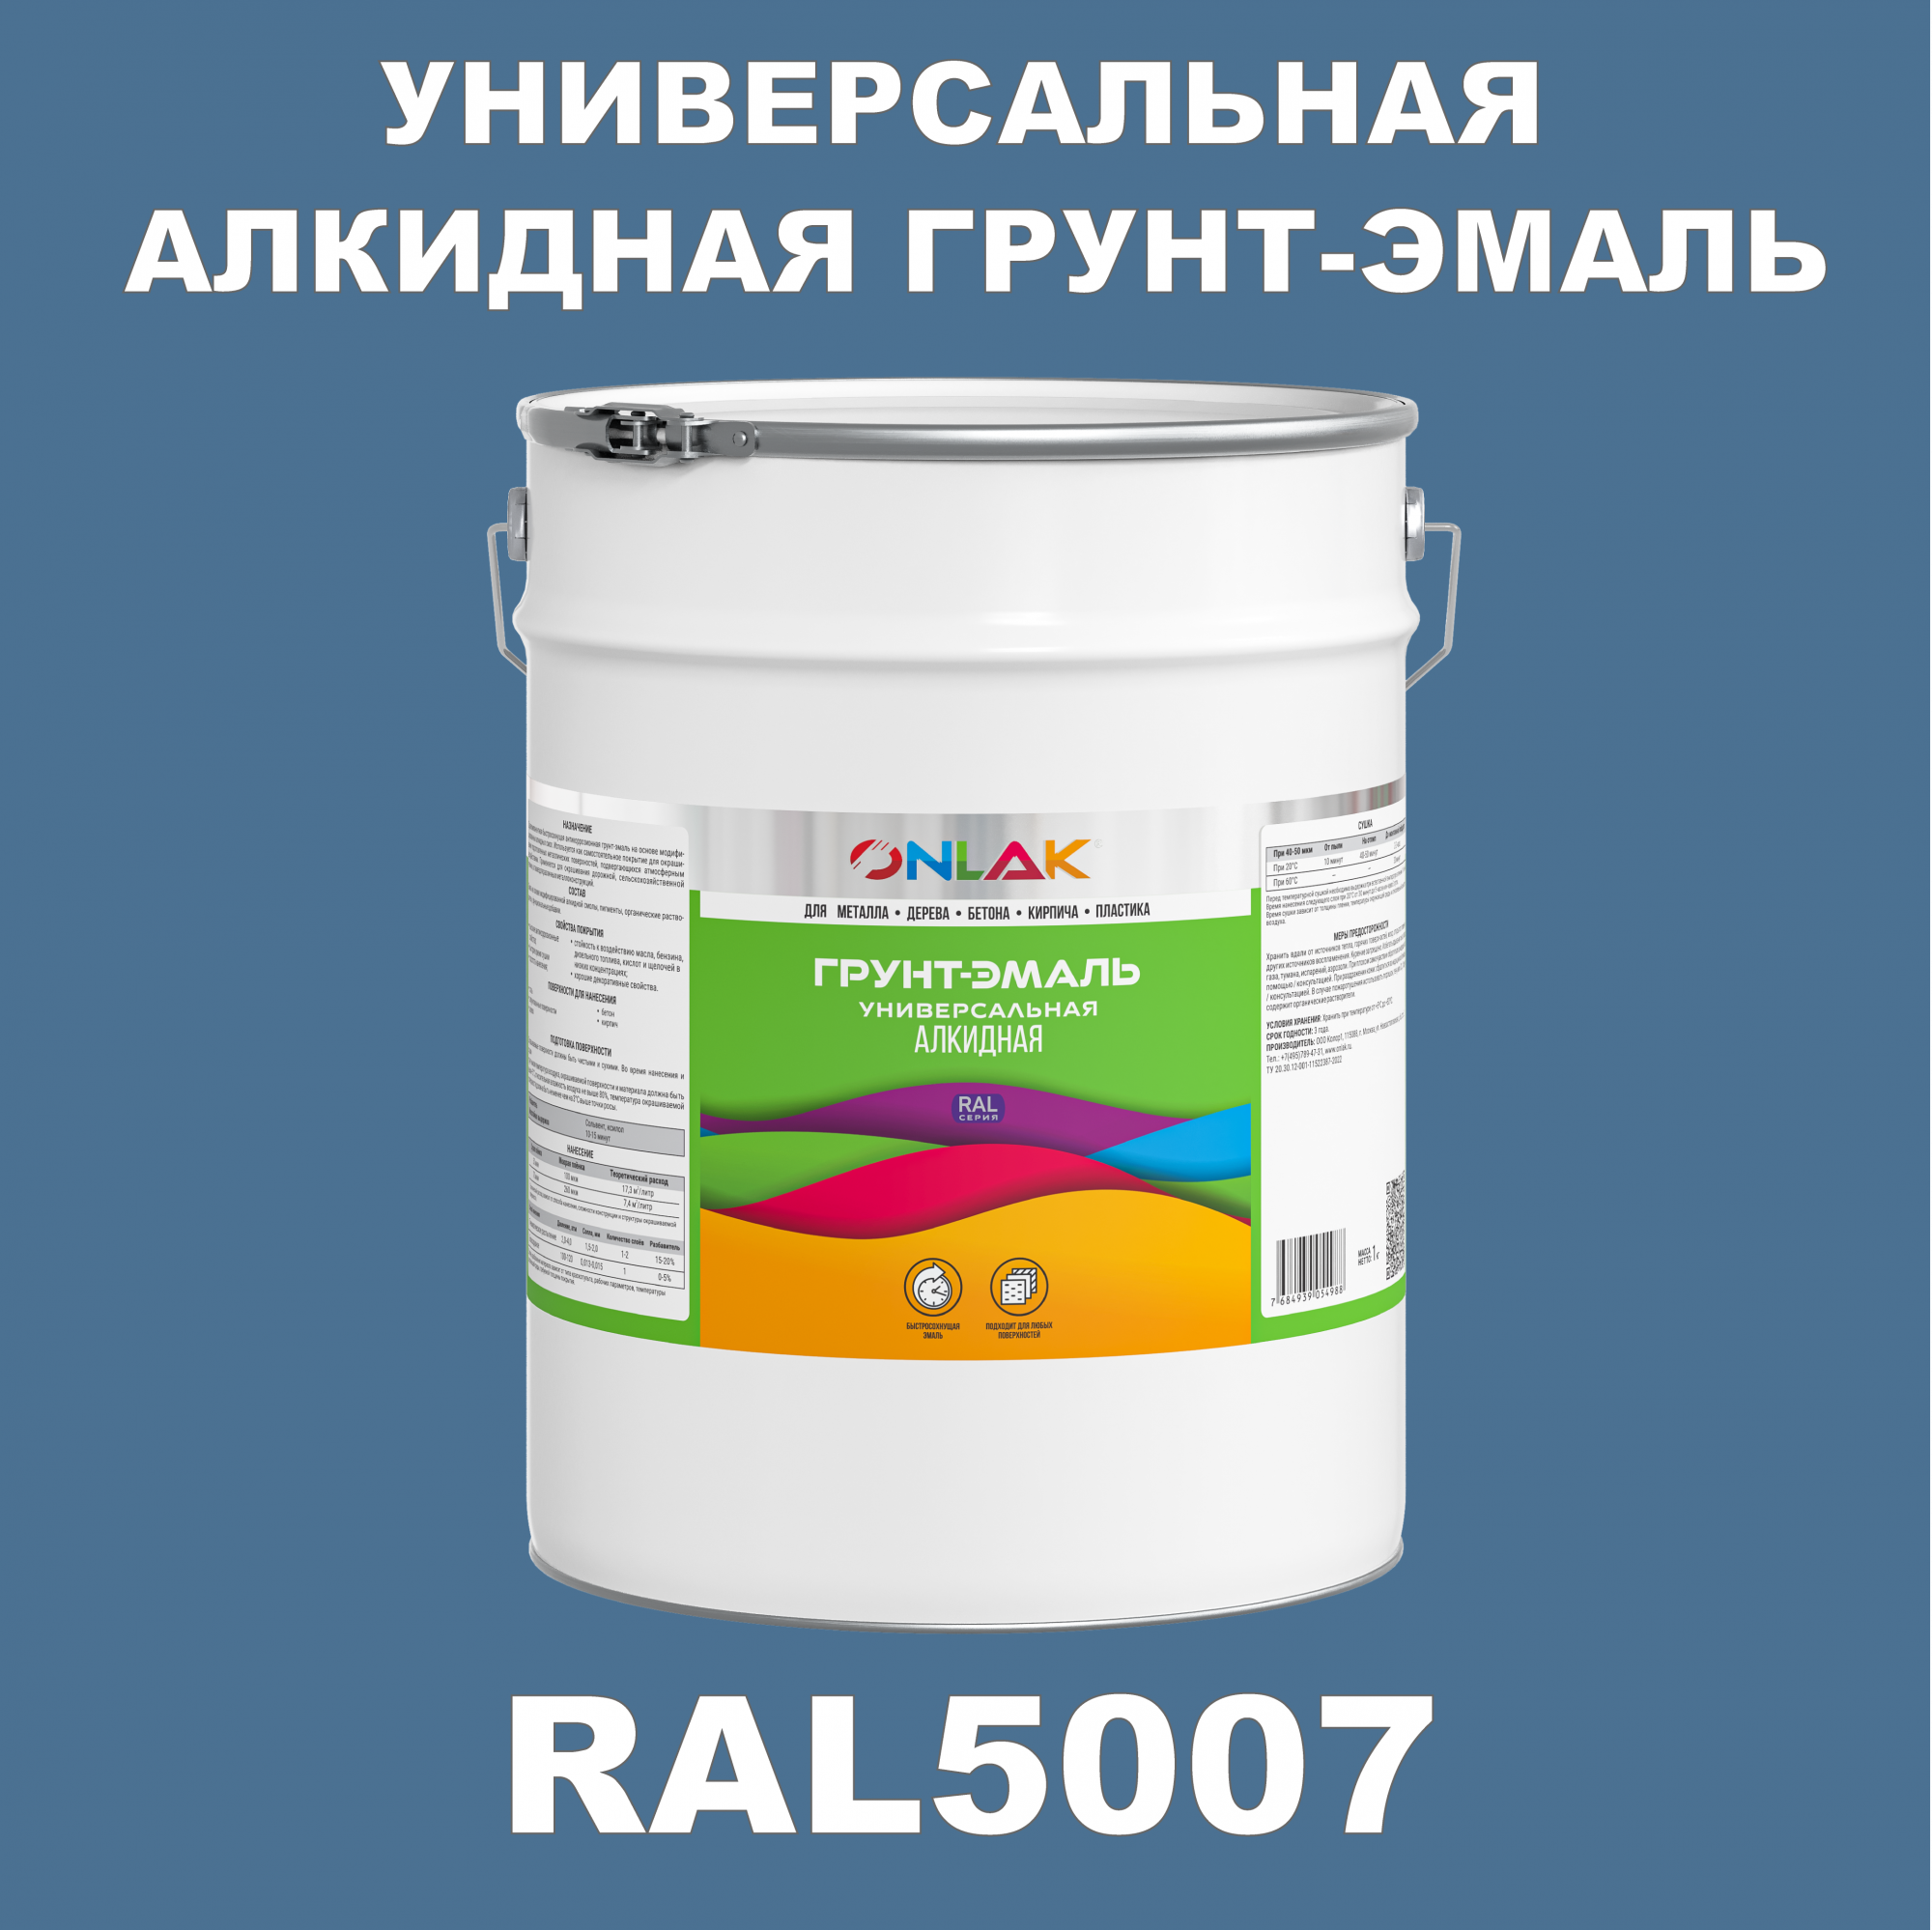 Грунт-эмаль ONLAK 1К RAL5007 антикоррозионная алкидная по металлу по ржавчине 20 кг грунт эмаль yollo по ржавчине алкидная зеленая 0 9 кг